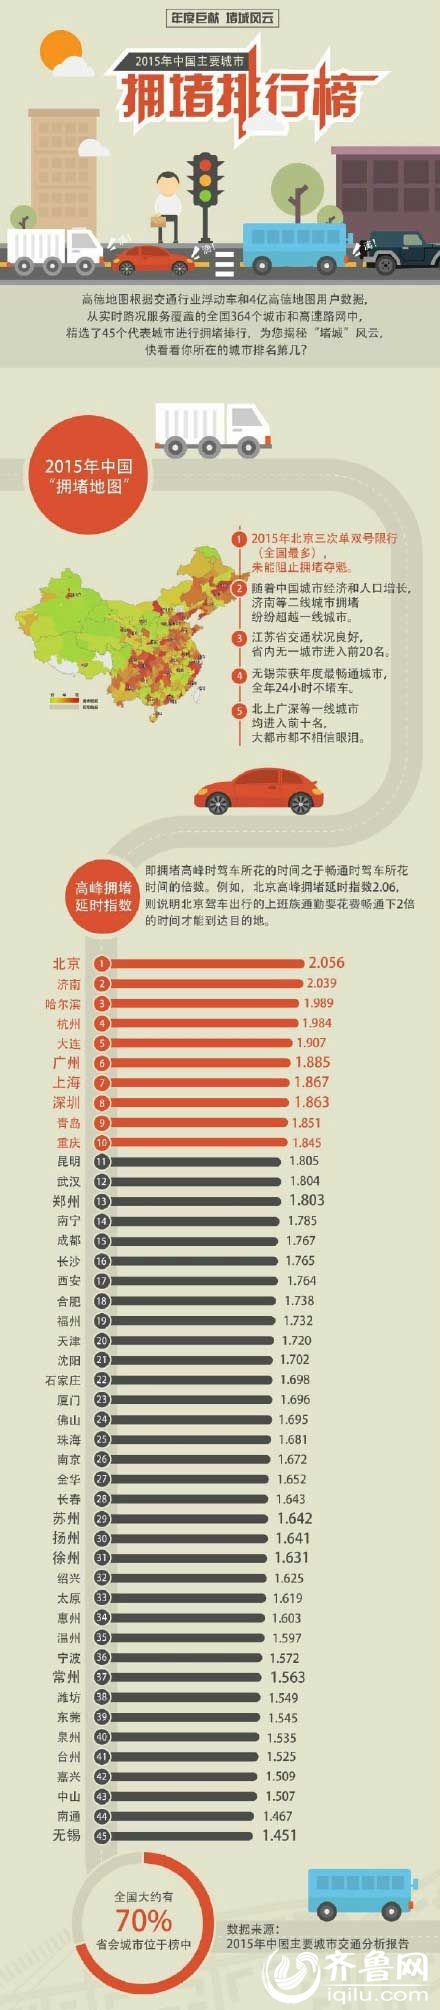 2015中國堵城排行榜出爐 北京最堵濟南第二堵(圖)